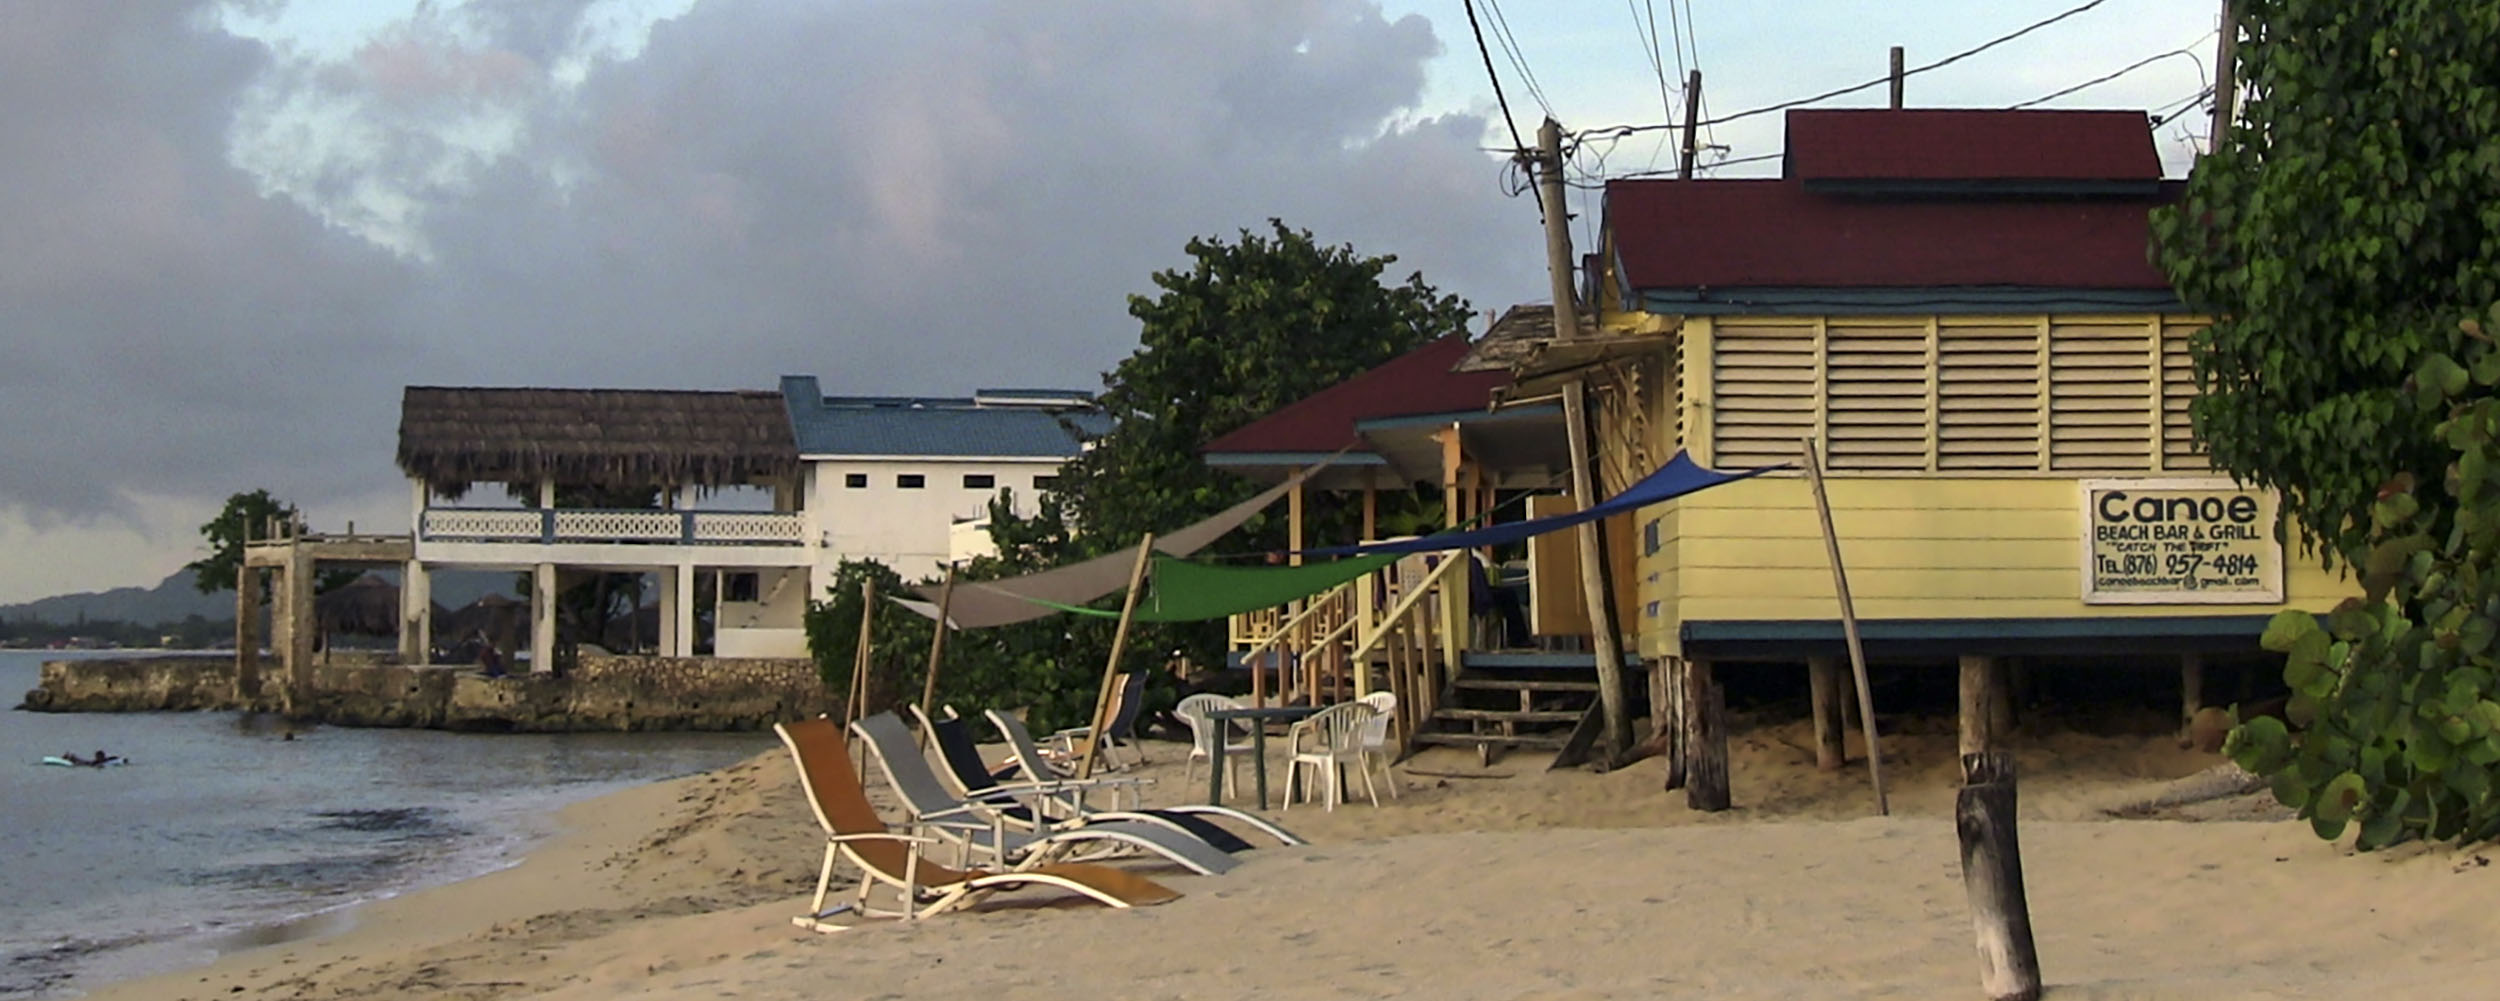 Canoe Beach Bar, West End, Negril Jamaica